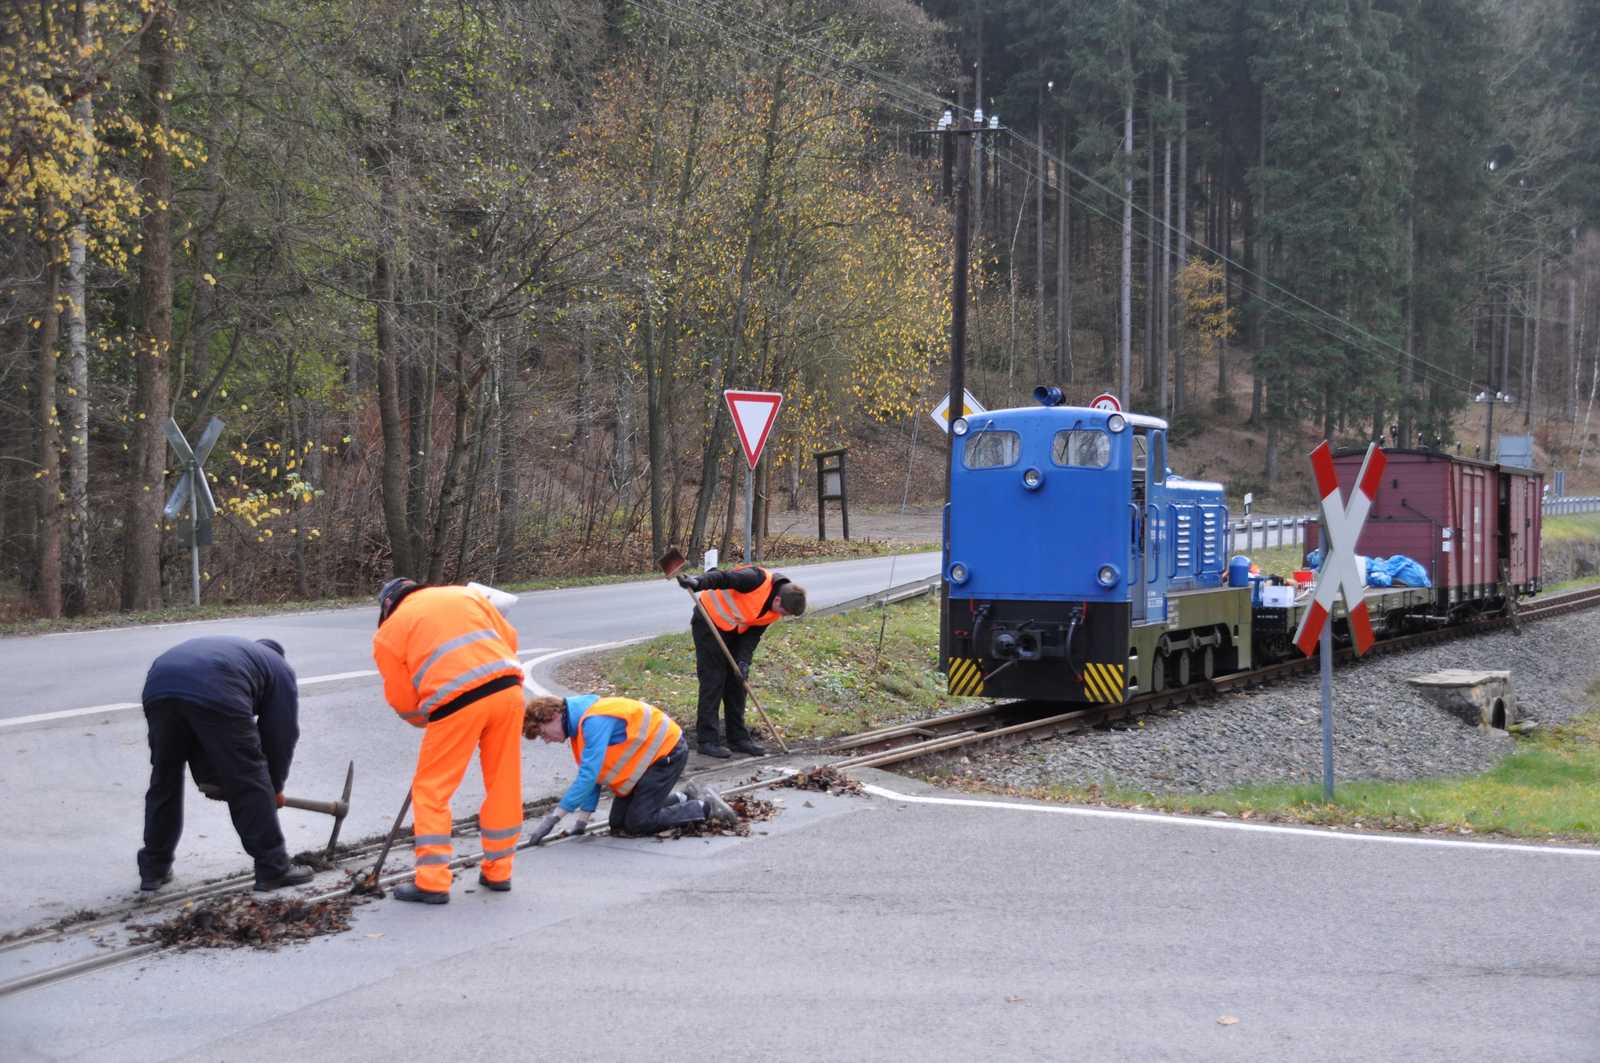 Beim Arbeitseinsatz am 10. November 2018 wurden Reinigungsarbeiten am Bahnübergang Grumbacher Straße ausgeführt.